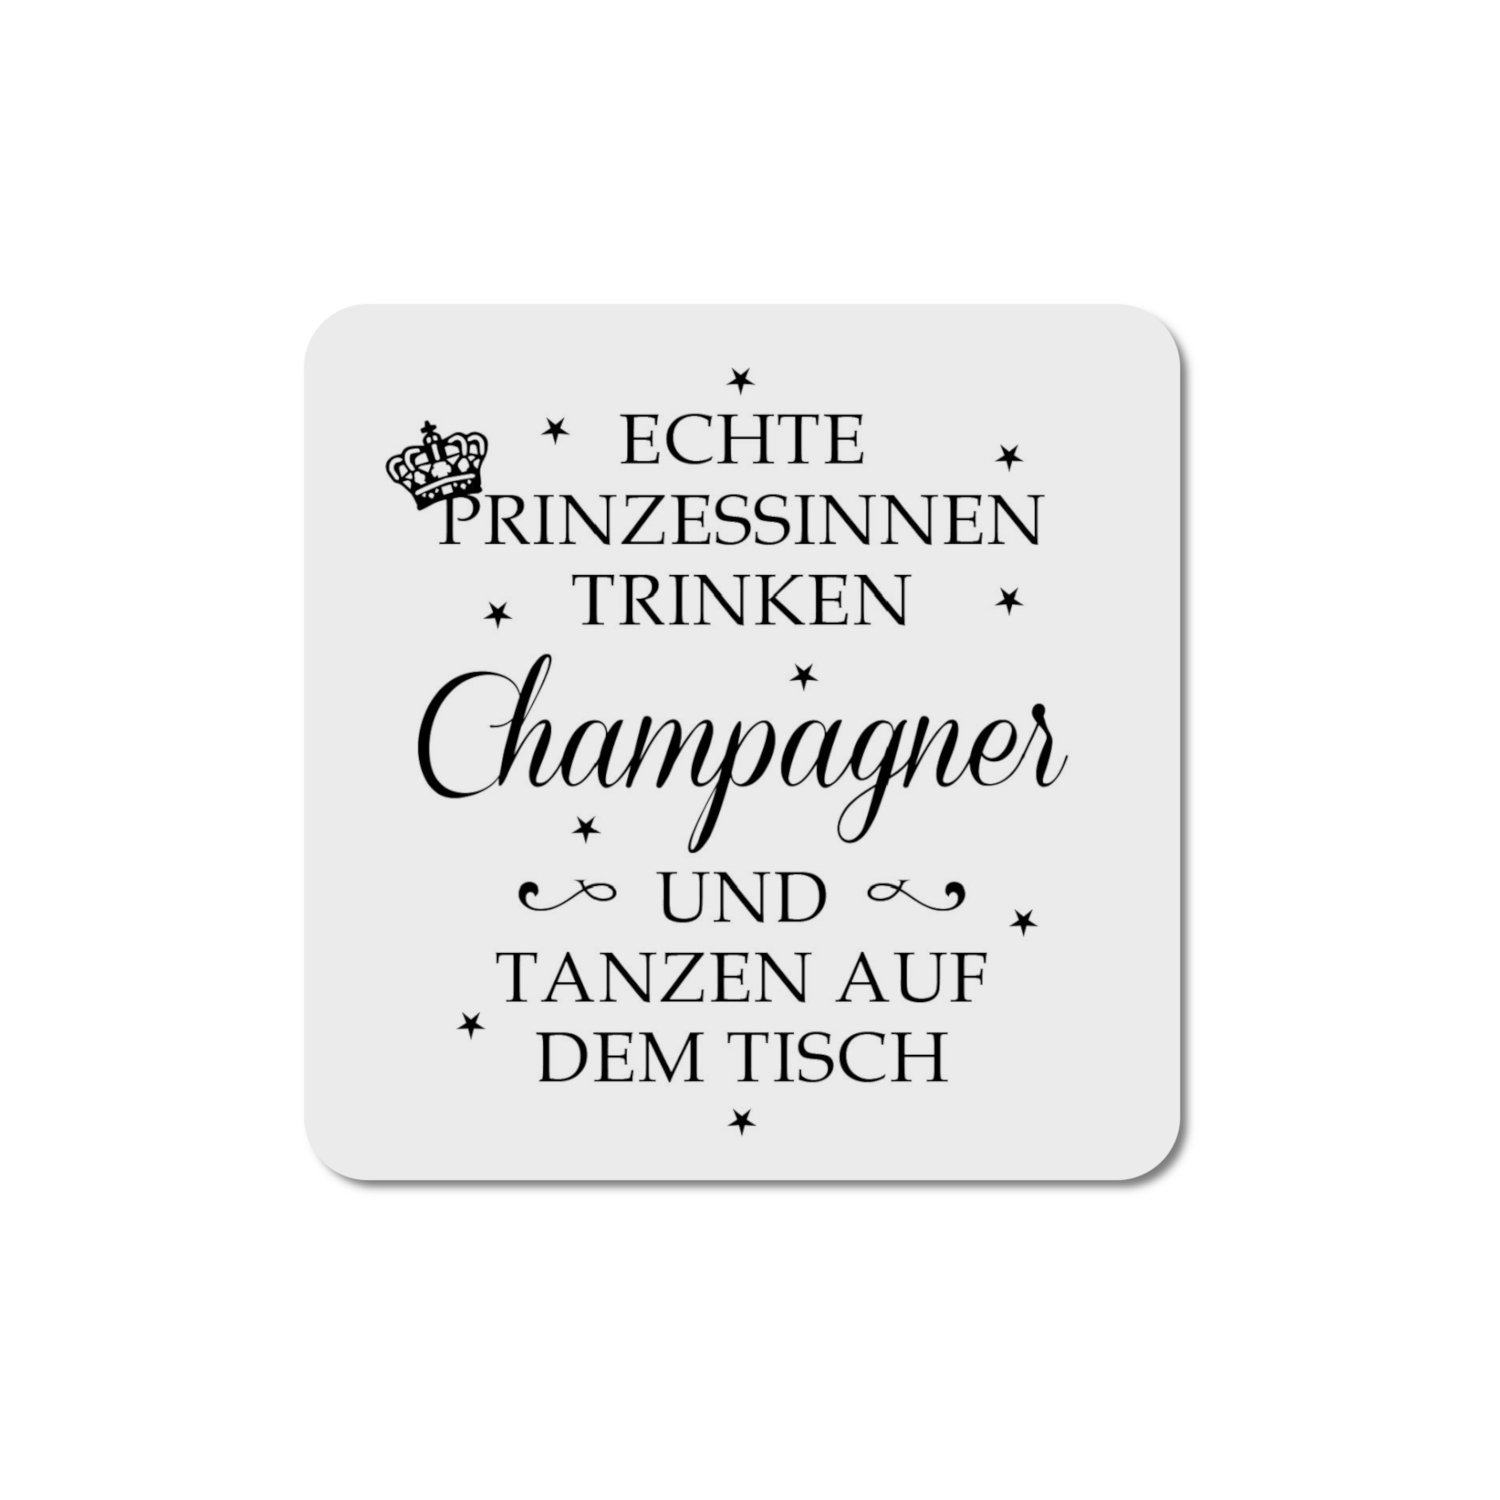 INTERLUXE LED Glasuntersetzer - Echte Prinzessinnen trinken Champagne